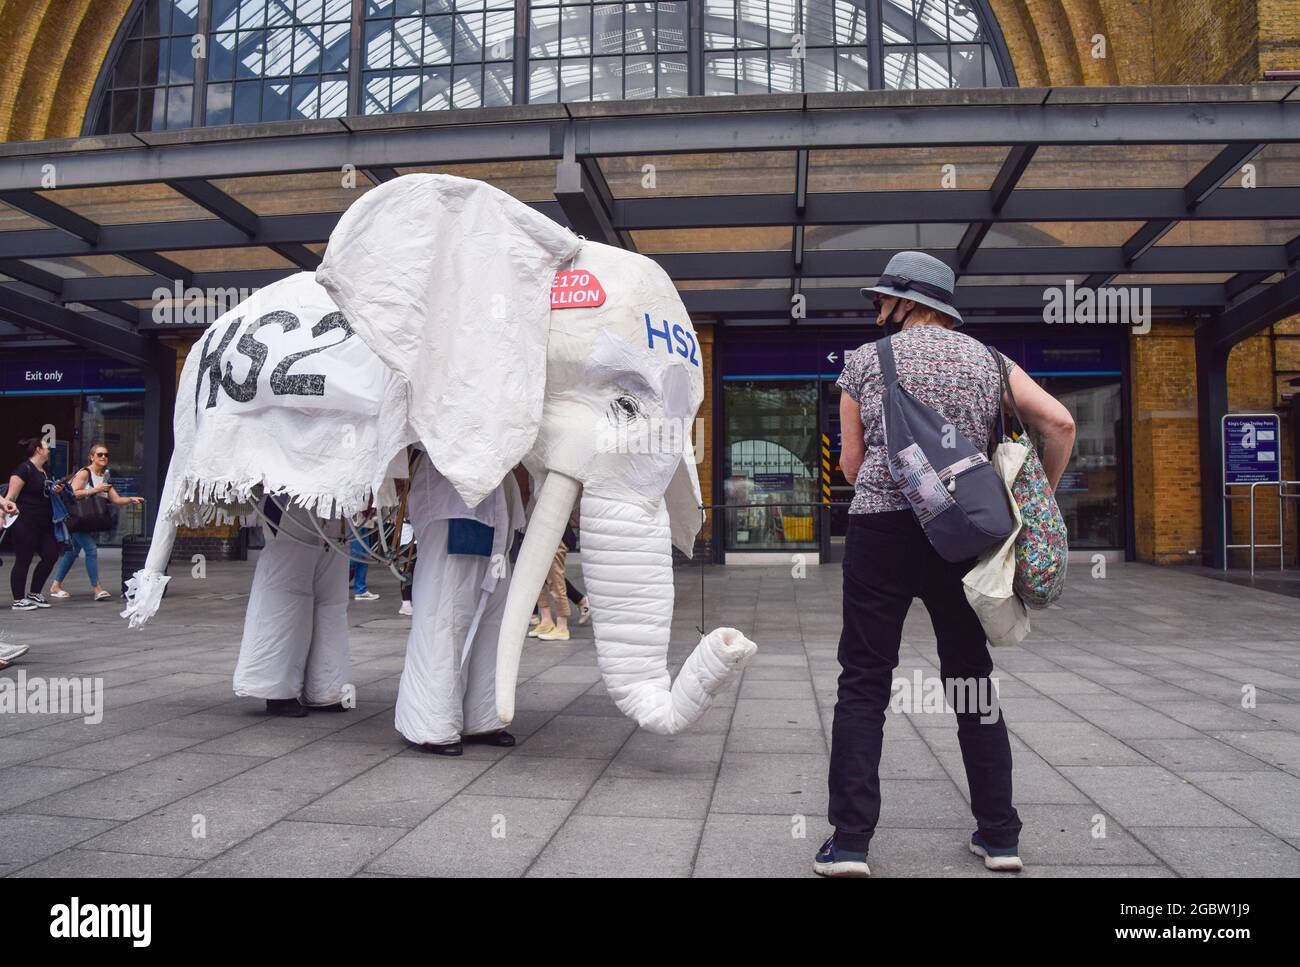 Londra, Regno Unito. 5 agosto 2021. I manifestanti che indossano un costume da elefante bianco 'HS2' sono condotti fuori dalla stazione ferroviaria da un altro protestore. Gli attivisti si sono riuniti fuori dalla King's Cross Station per protestare contro il nuovo sistema ferroviario ad alta velocità 2 (HS2), che gli ambientalisti dicono sarà 'ecologicamente devastante' e costerà ai contribuenti £170 miliardi. (Credit: Vuk Valcic/Alamy Live News) Foto Stock